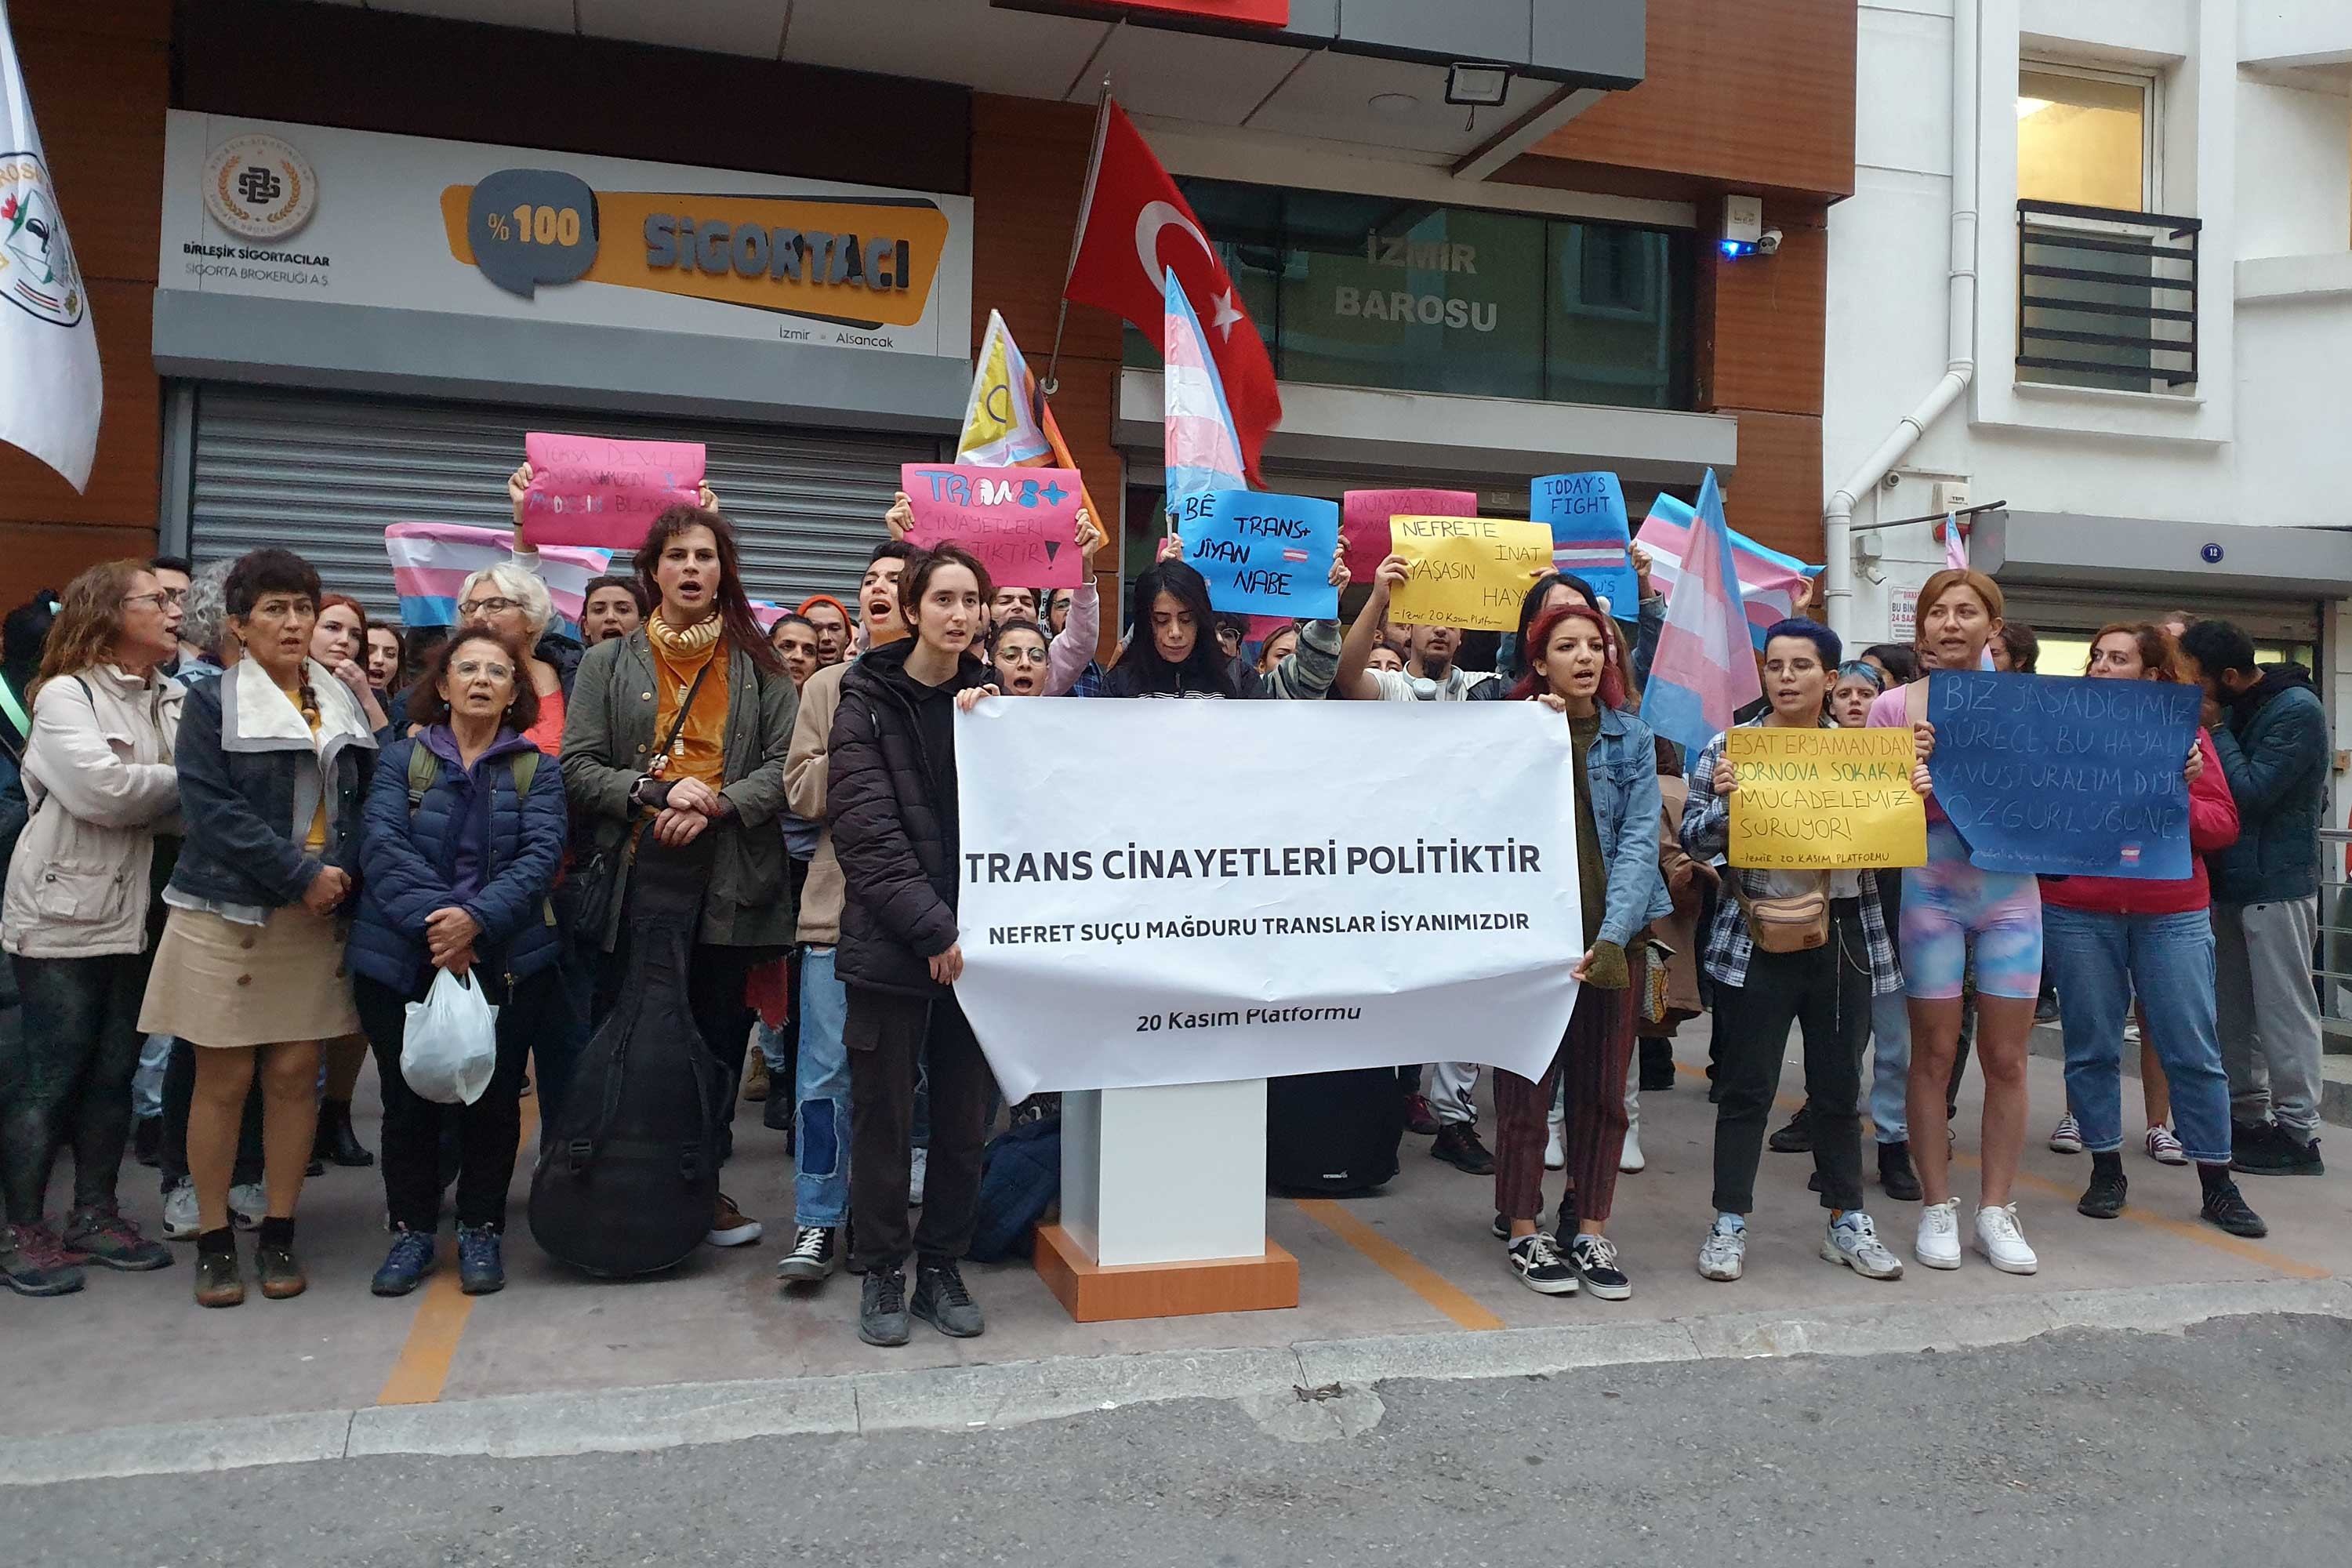 İzmir’de trans cinayetlerine karşı eylem: Katledilen translar isyanımızdır! Kaos GL - LGBTİ+ Haber Portalı